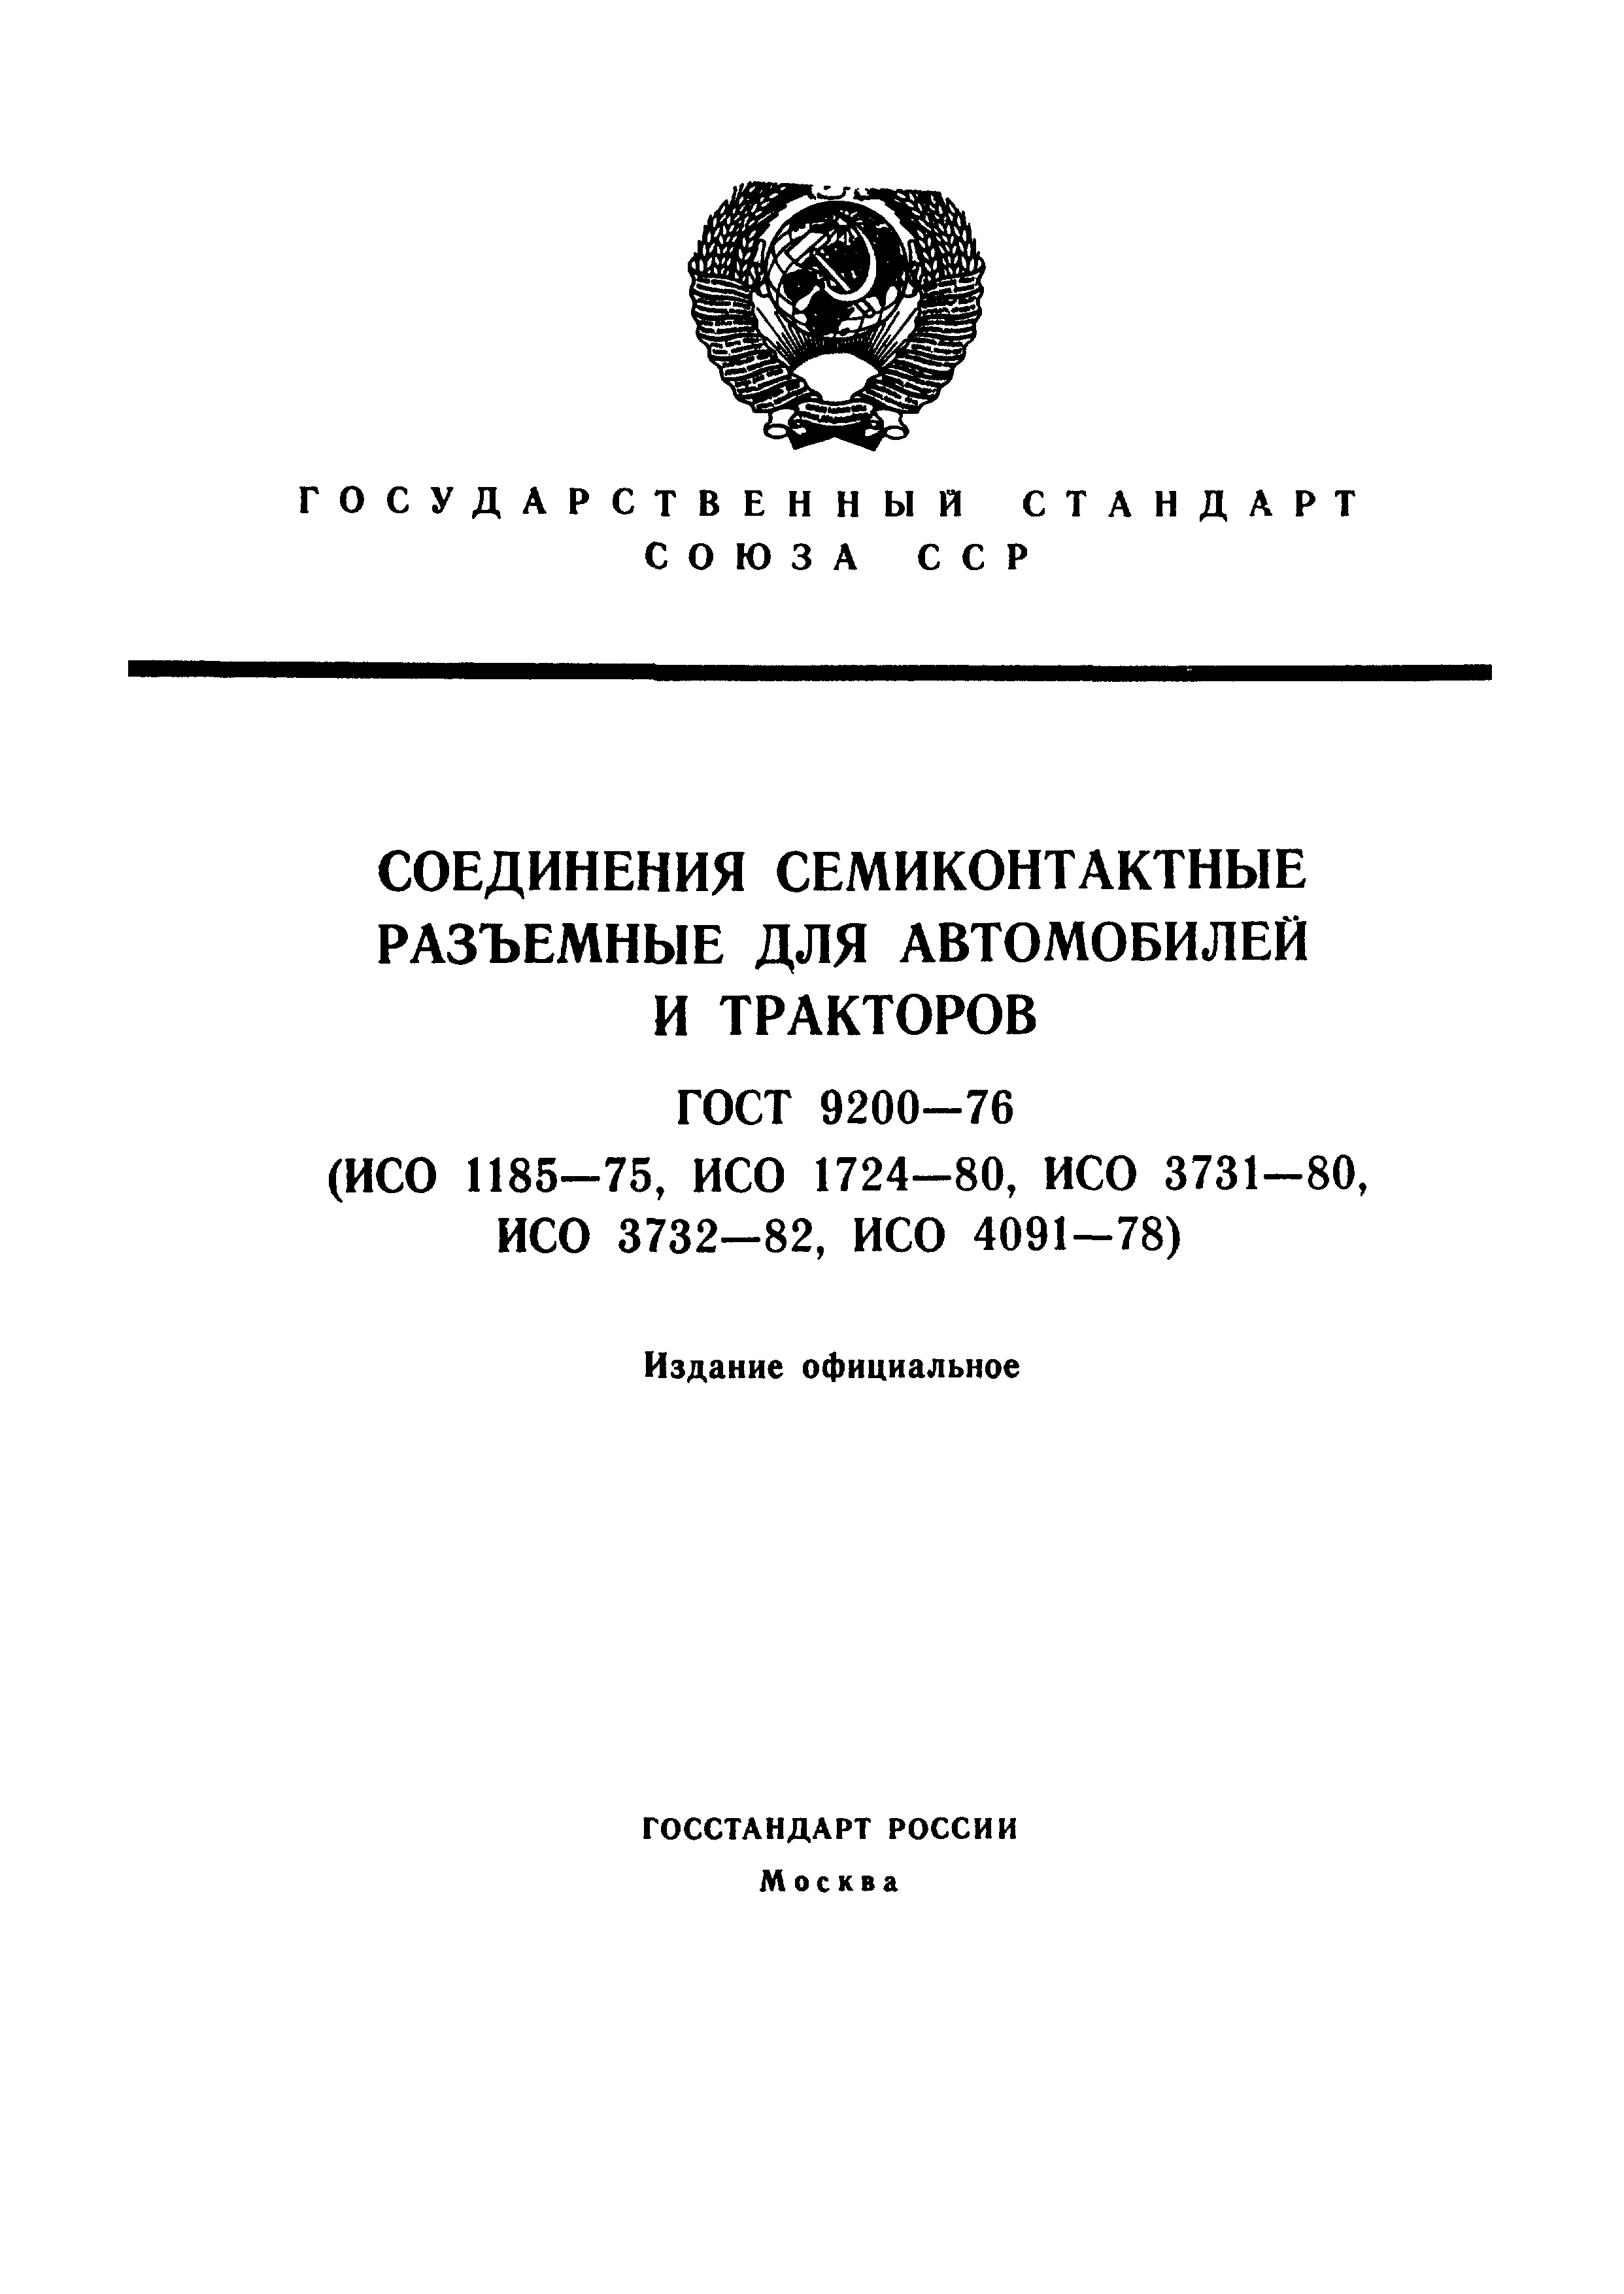 Скачать ГОСТ 9200-76 Соединения Семиконтактные Разъемные Для.